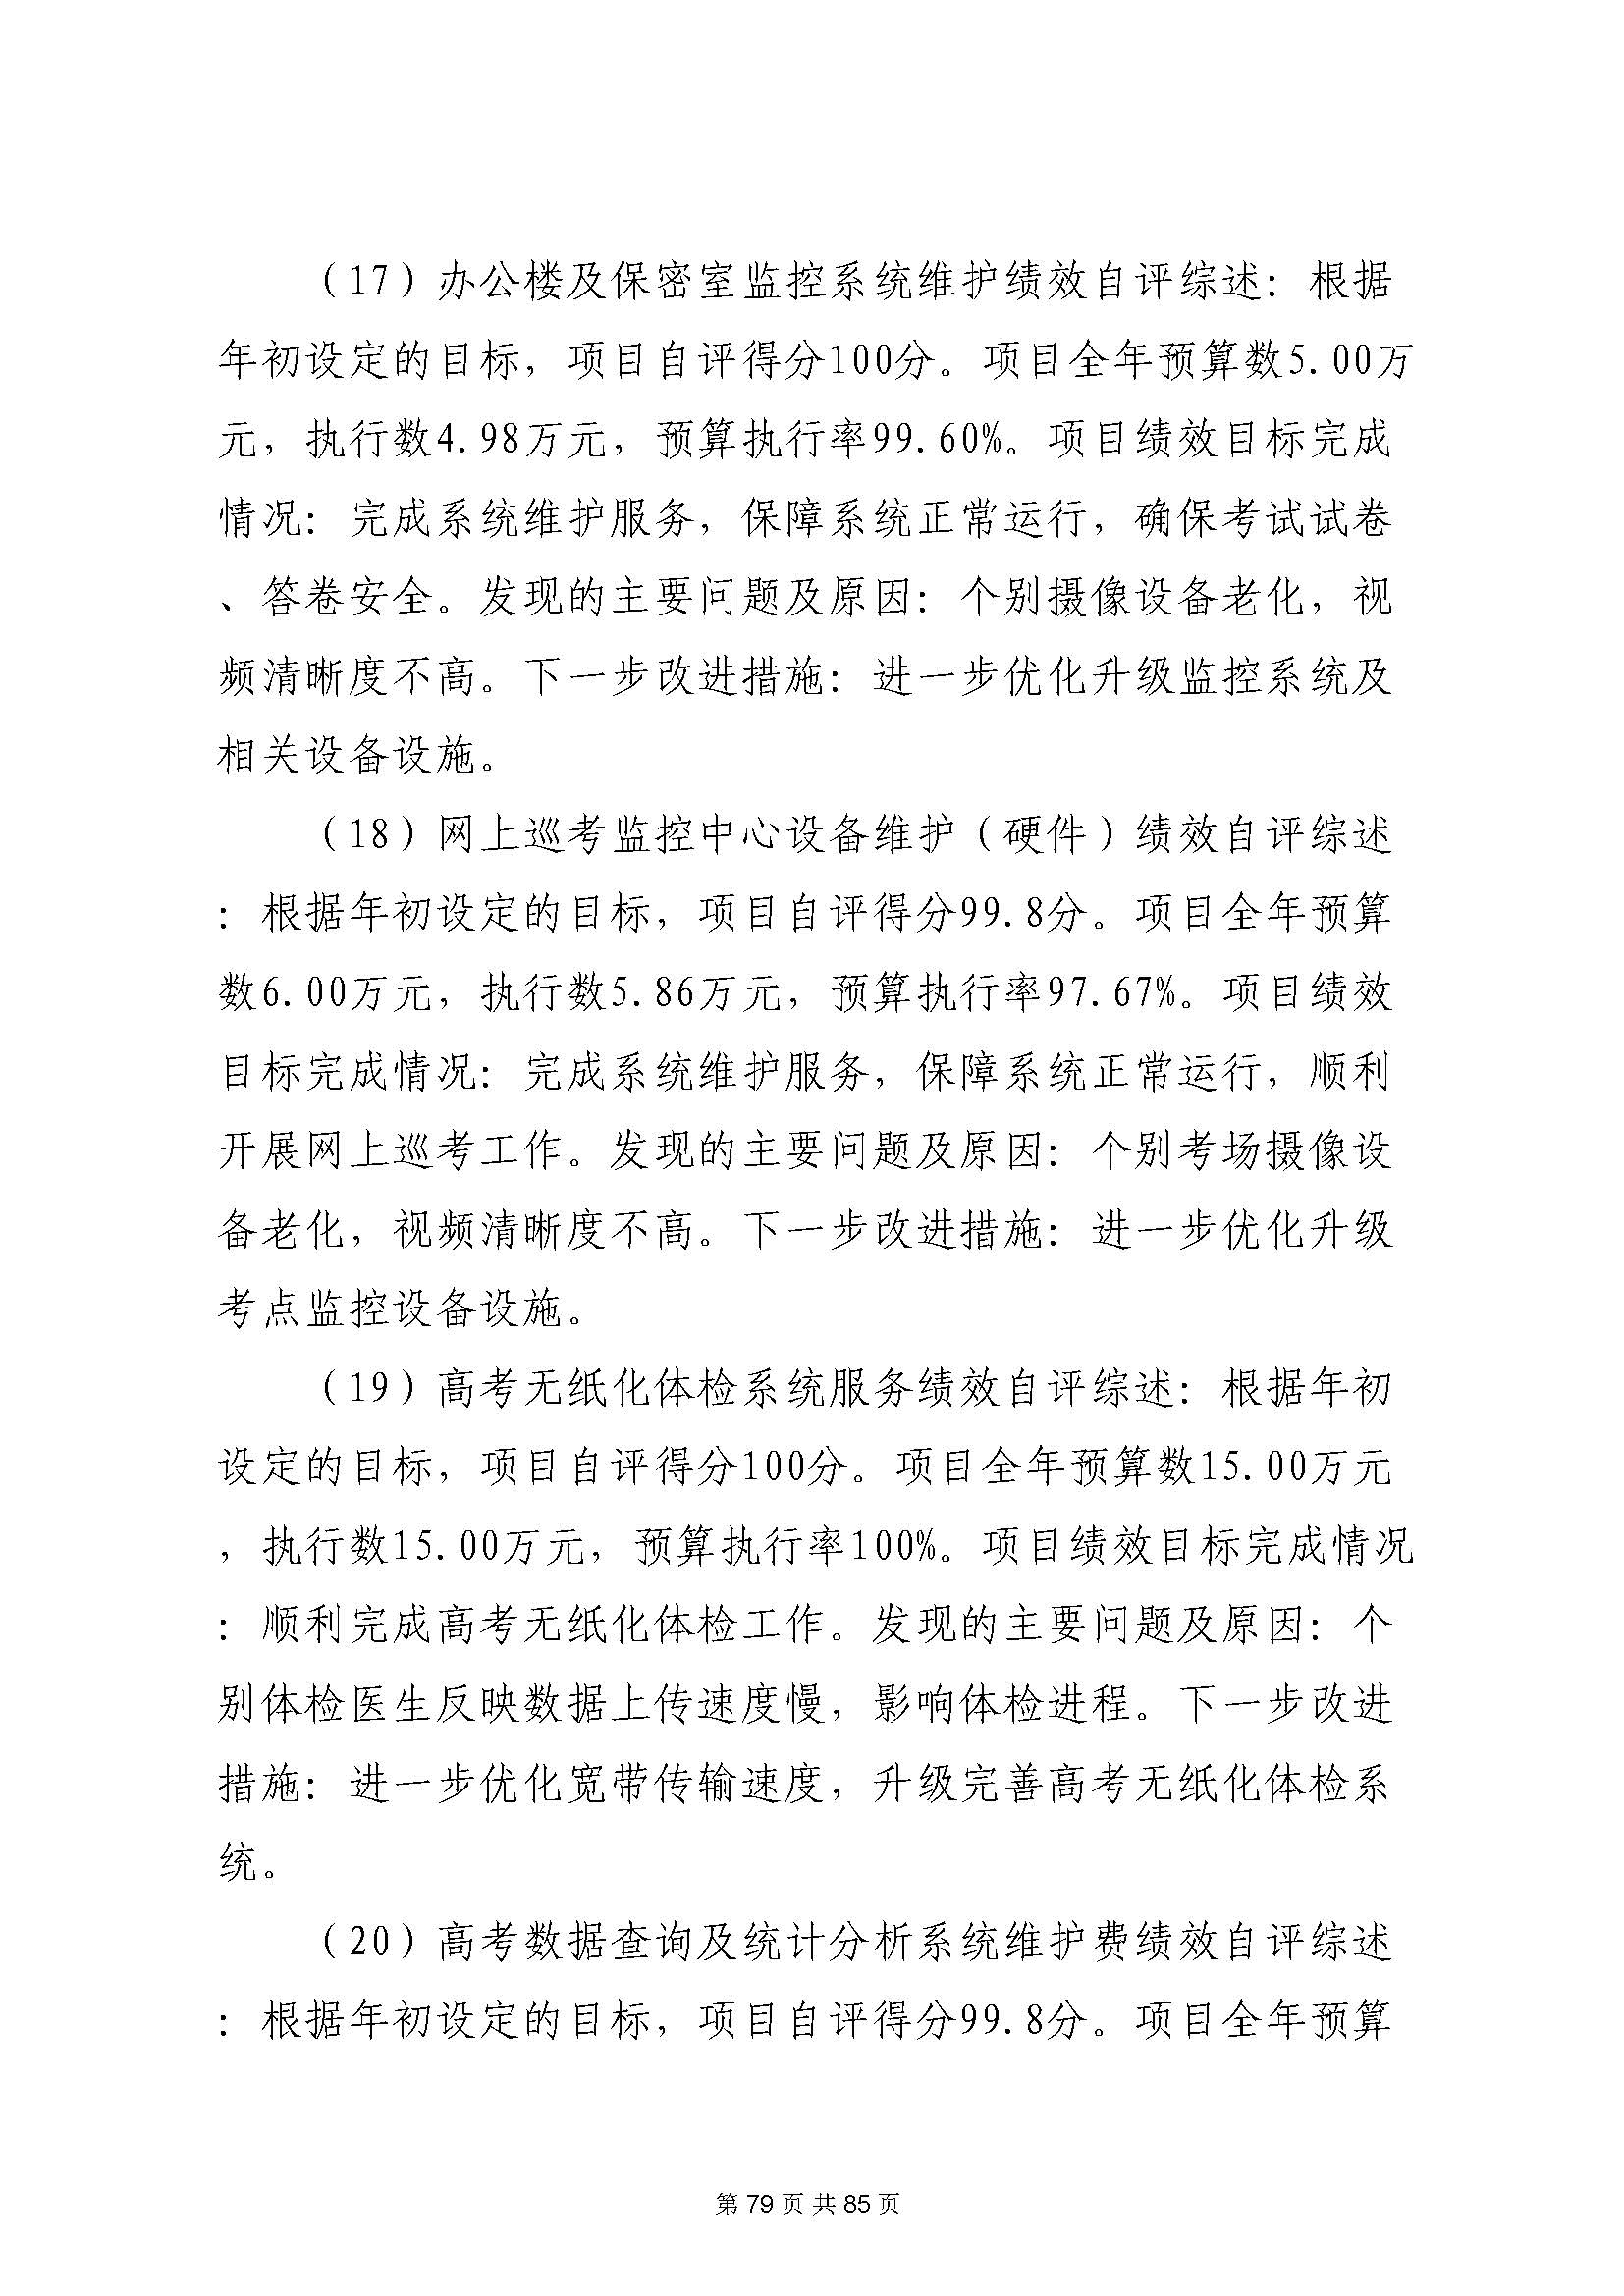 深圳市招生考试办公室2020年度部门决算_页面_80.jpg